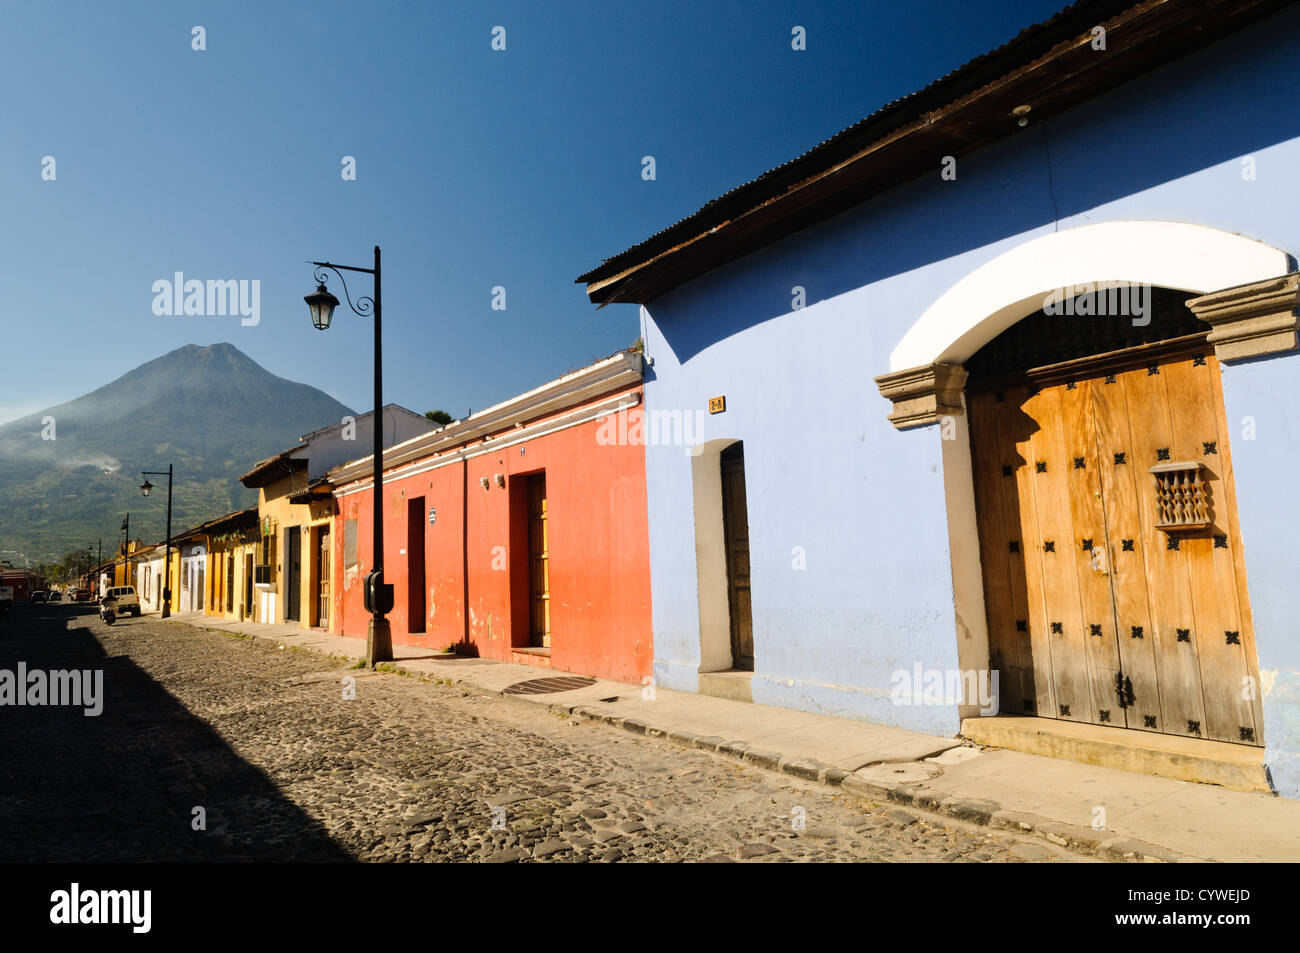 L'architecture coloniale espagnole traditionnelle d'Antigua se trouve au premier plan, avec le Volcán de Agua (ou Volcan Agua) dans l'arrière-plan. Célèbre pour son bien-préservé l'architecture baroque espagnole ainsi qu'un certain nombre de ruines de tremblements, Antigua Guatemala est un UNESCO World Heritage Site et ancienne capitale du Guatemala. Banque D'Images